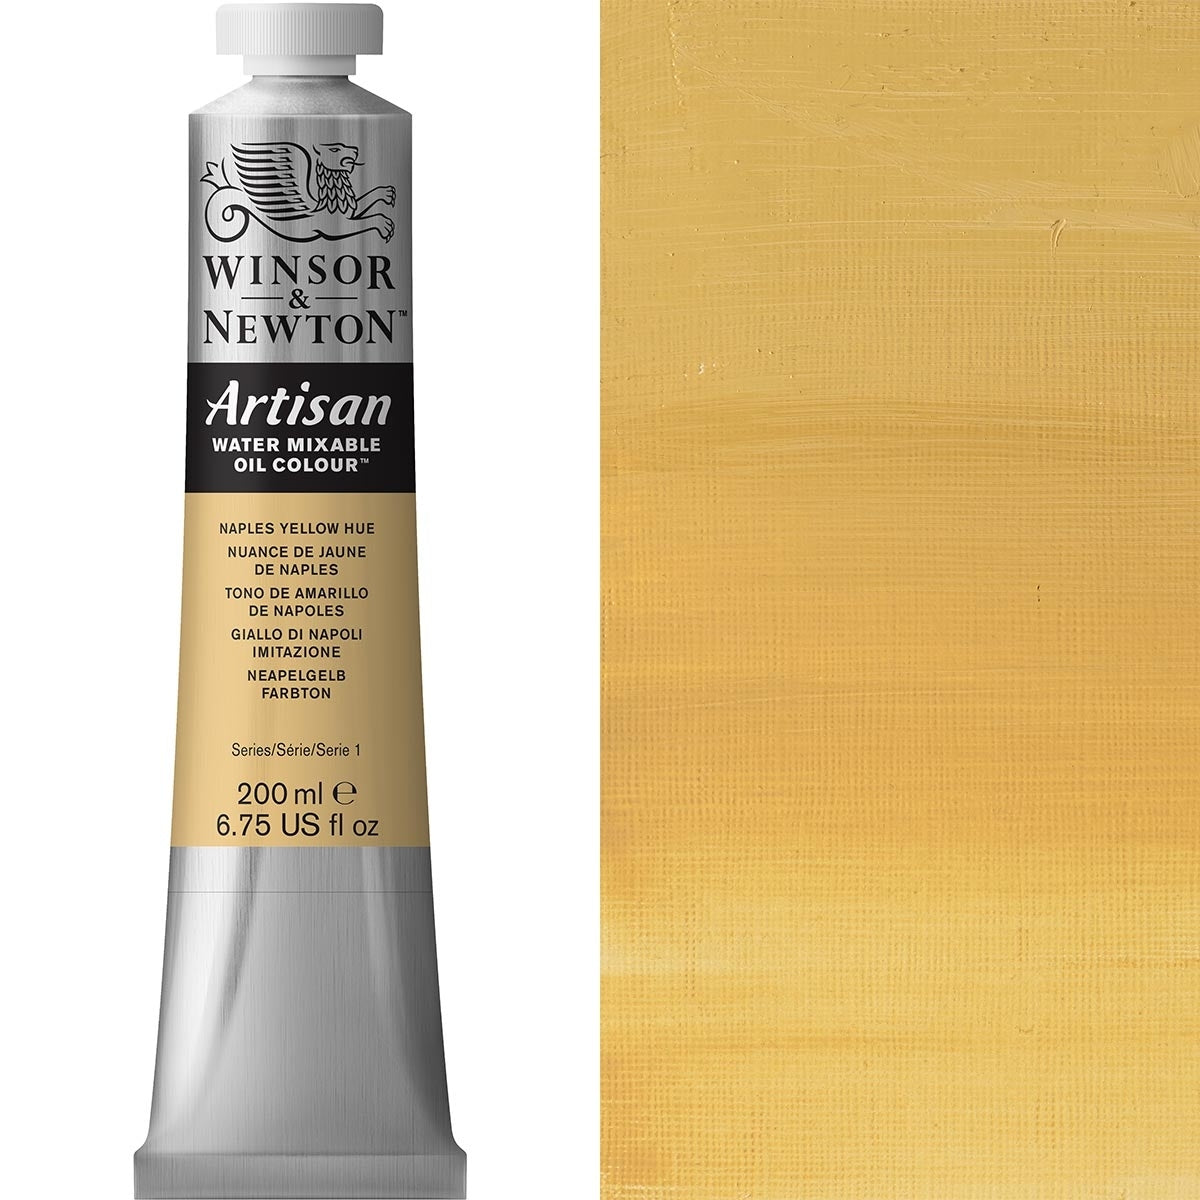 Winsor e Newton - Watermixable di colore olio artigianale - 200 ml - Napoli giallo